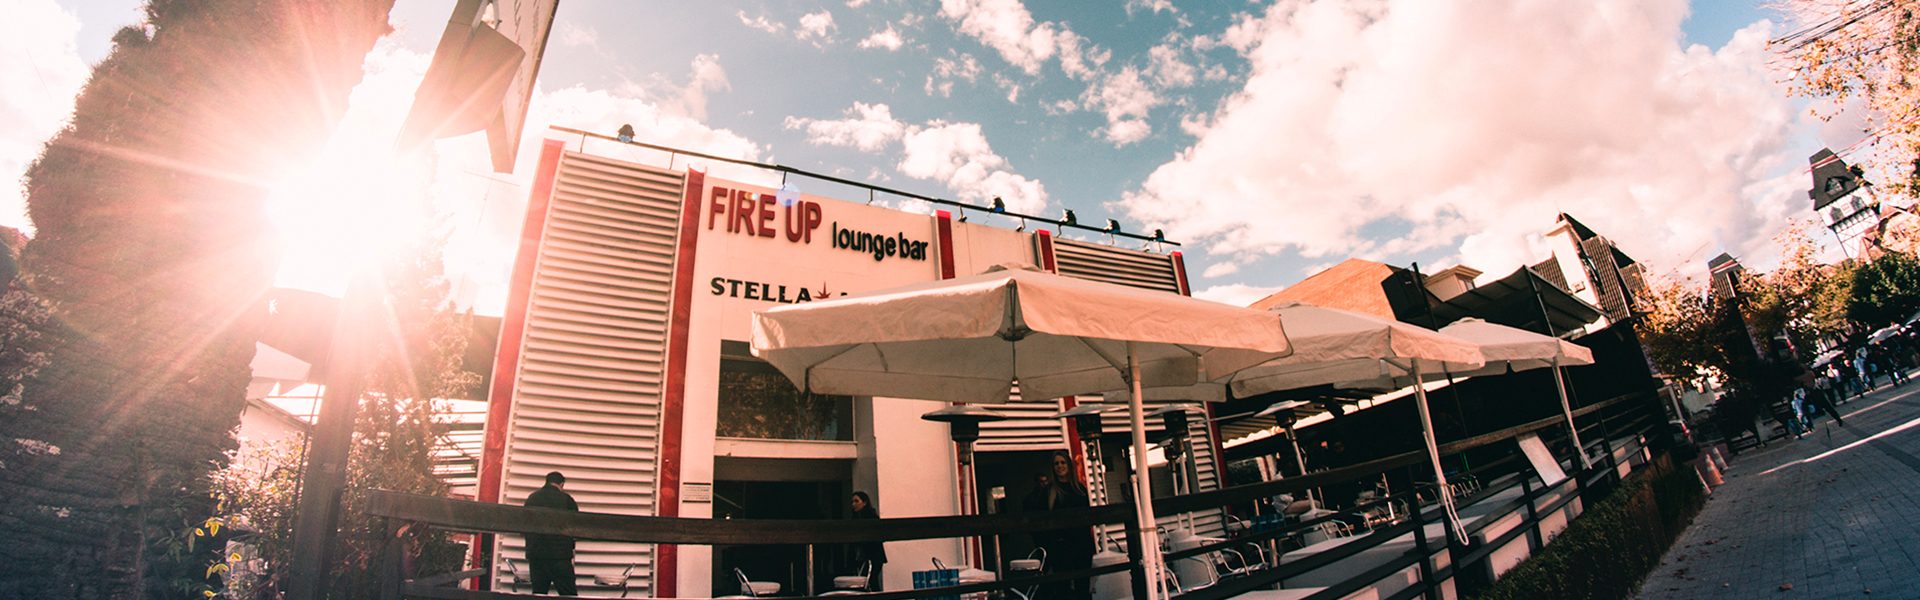 Fire Up Lounge Bar - Campos do Jordão - SP